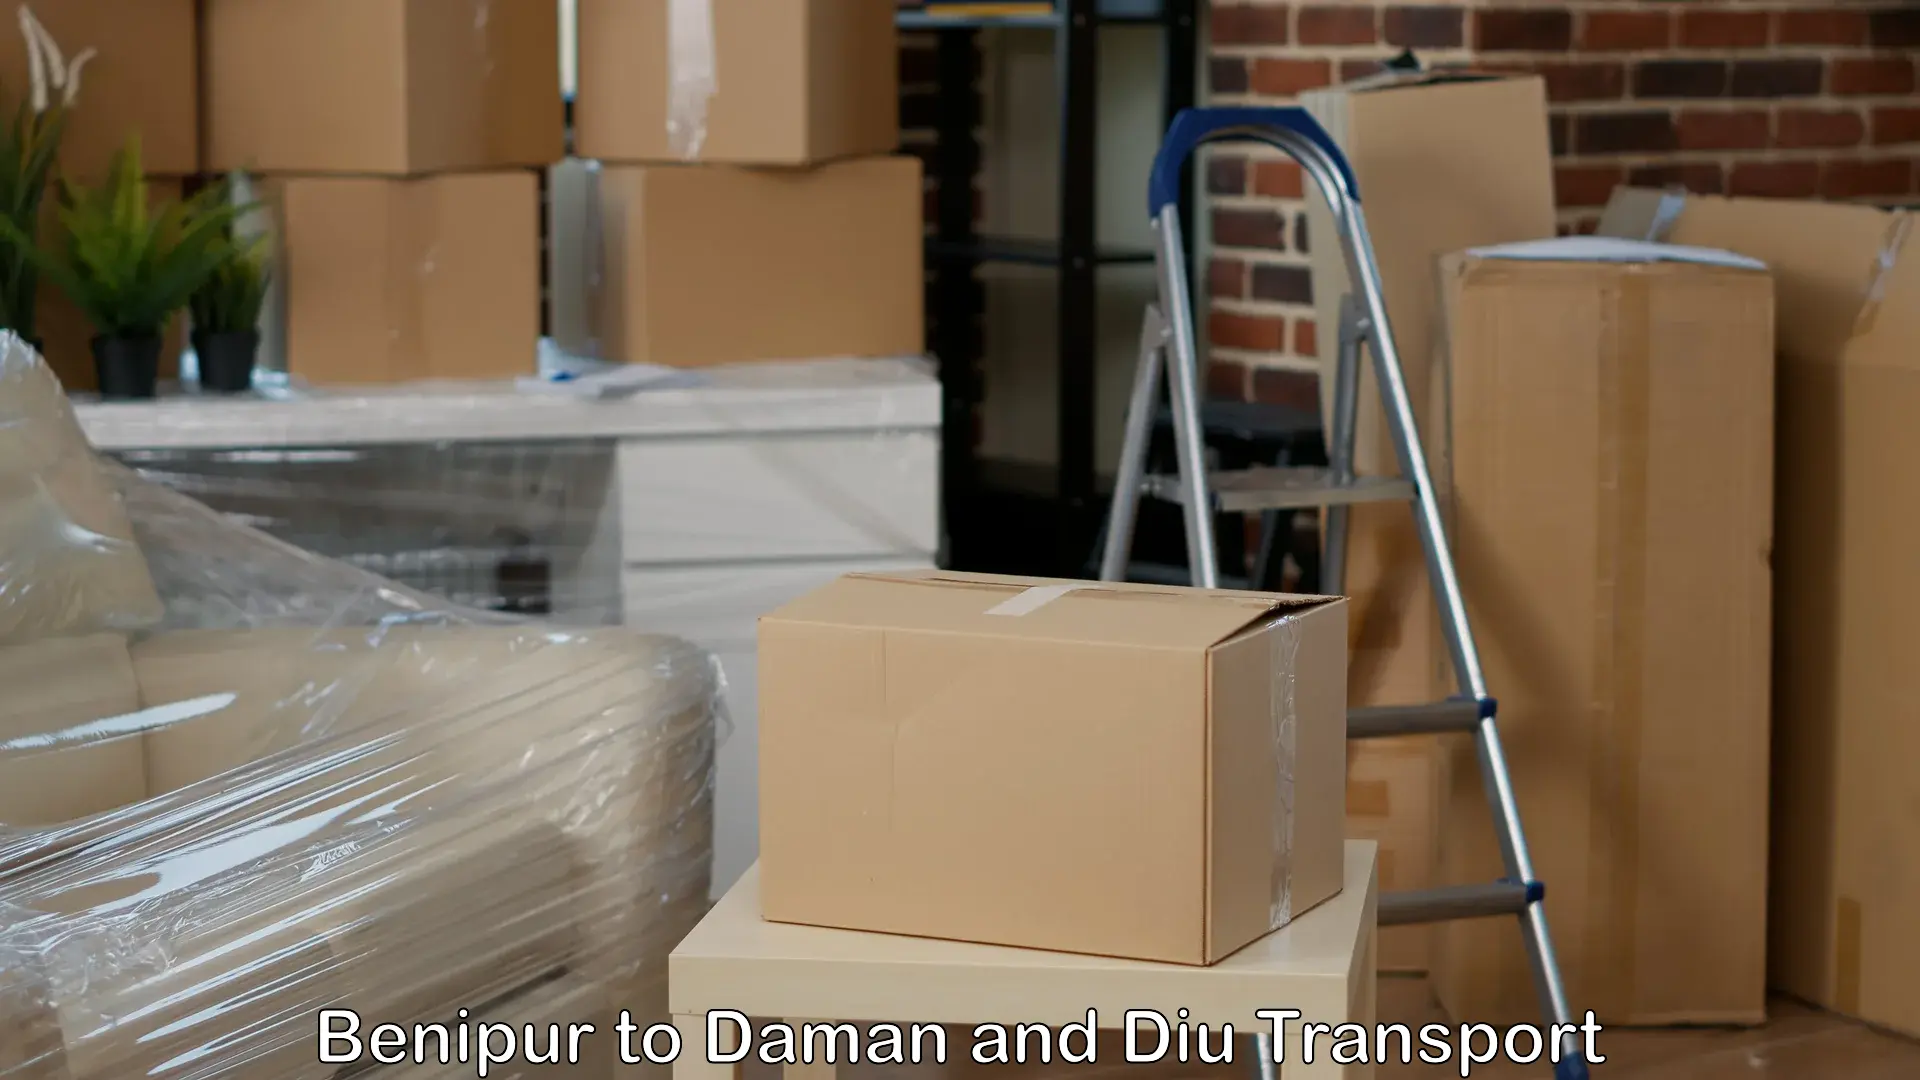 Furniture transport service Benipur to Daman